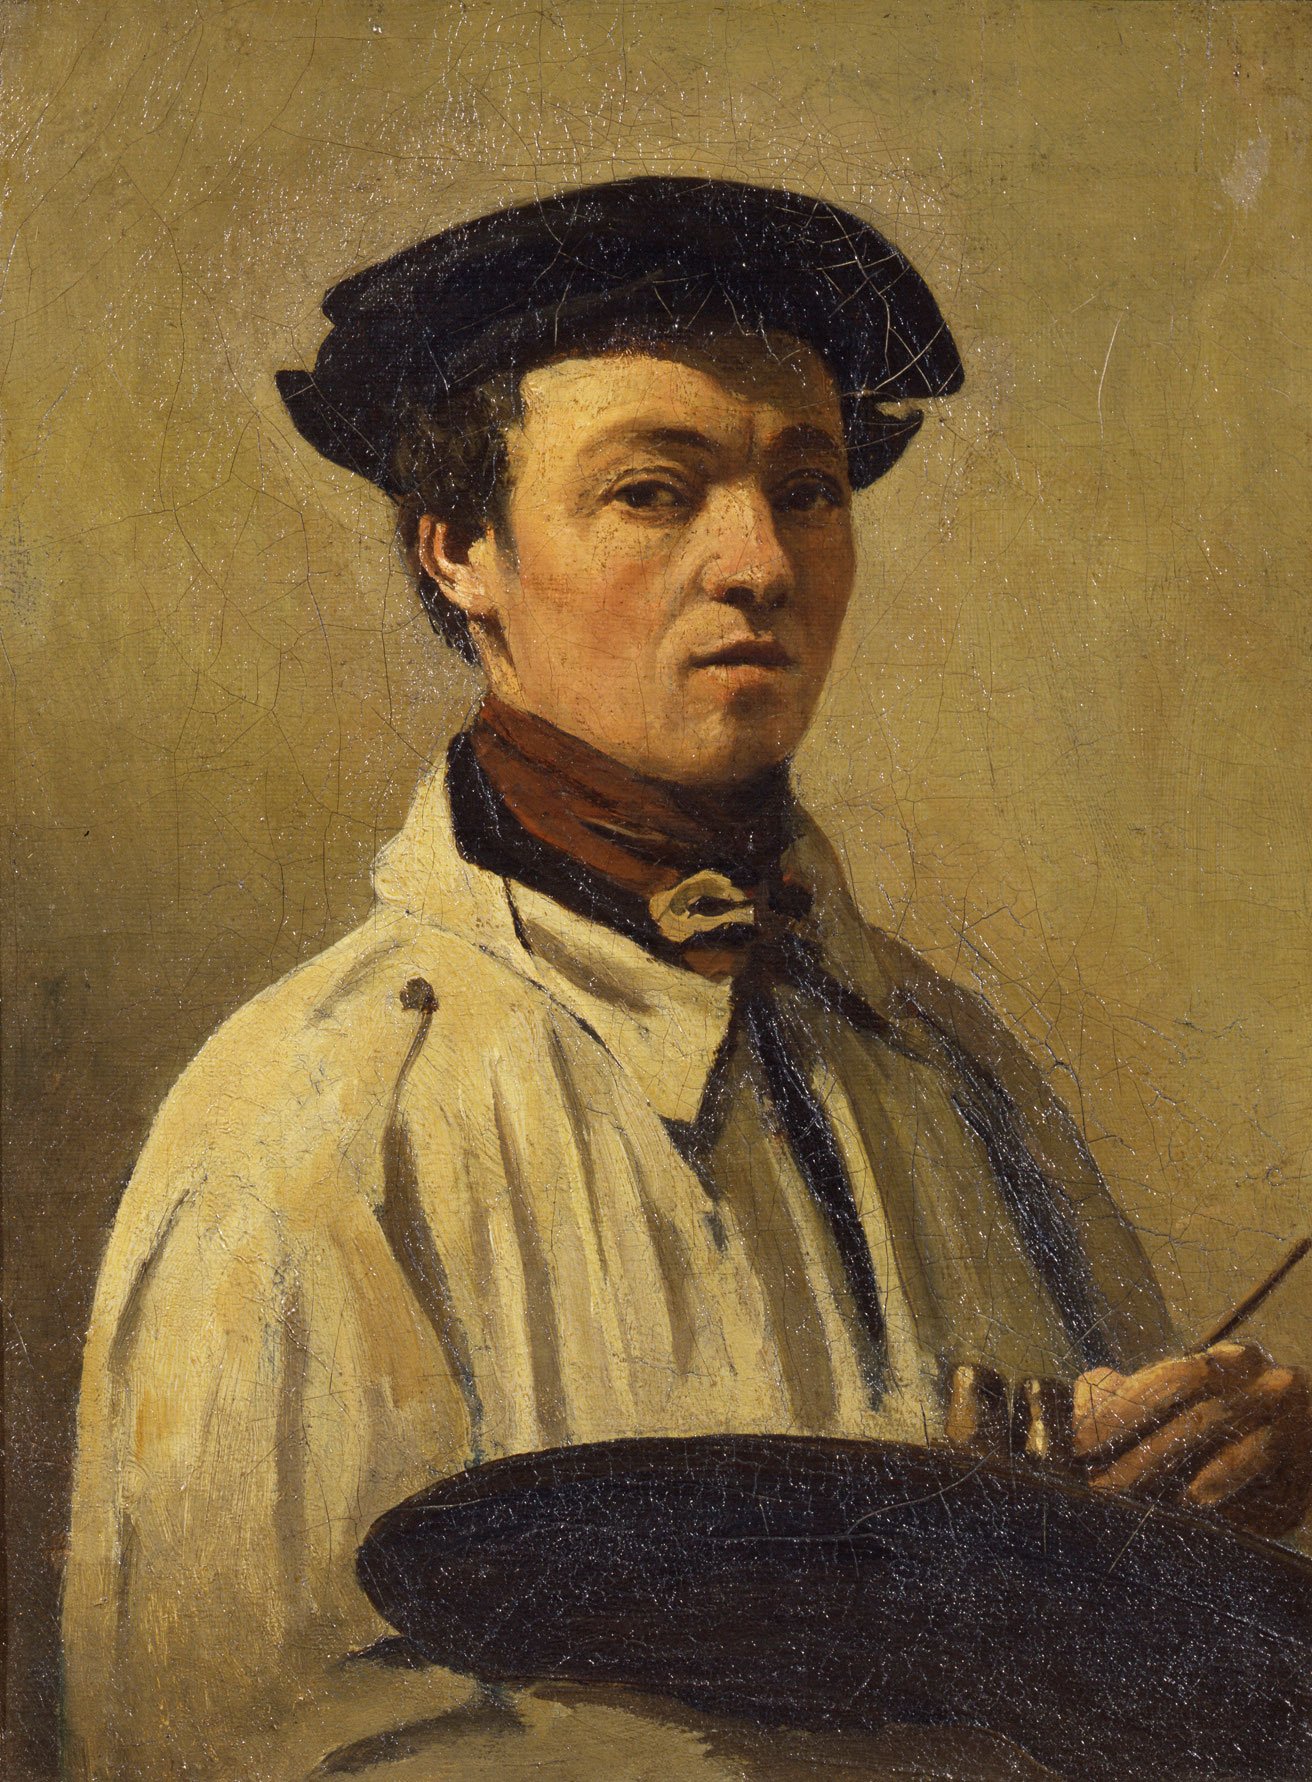 Ein junger Mann in einem weißem Hemd, mit einem roten Schal und einer Mütze. Er hält eine Palette in der Hand und einen Pinsel. Das Gemälde ist von Camille Corot.